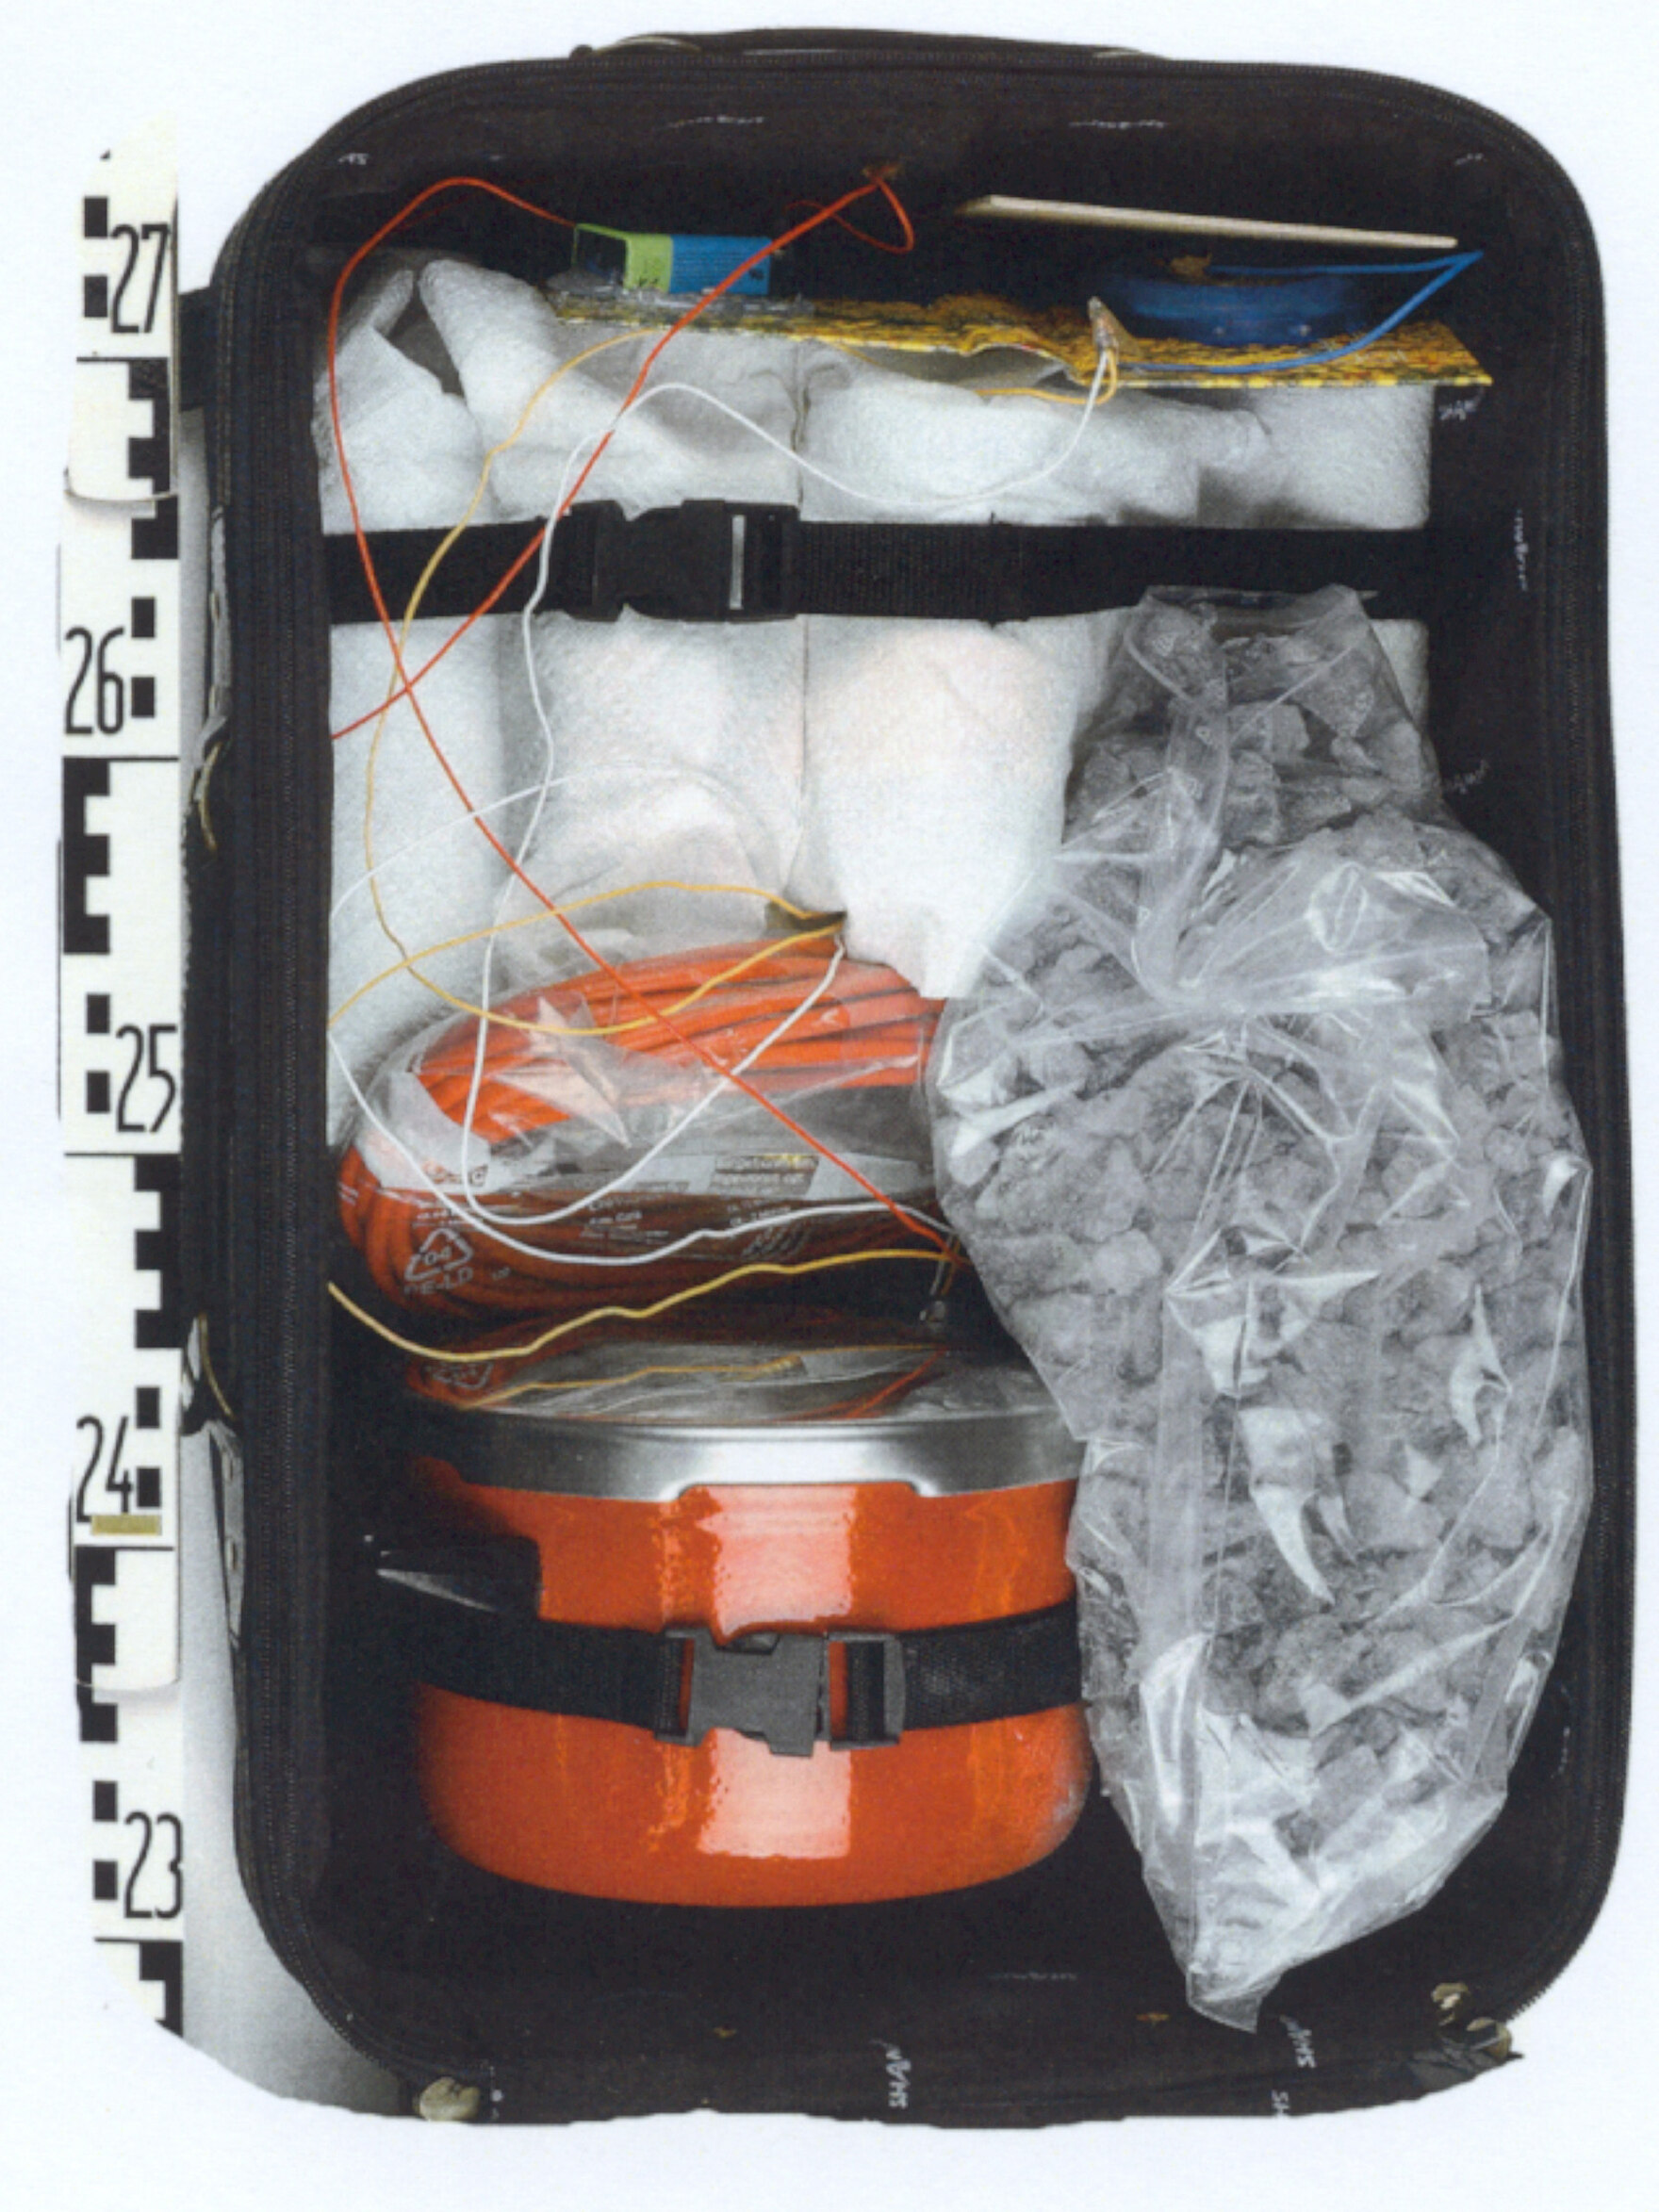 Dargestellt ist der Nachbau einer Kofferbombe. Dieser besteht unter anderem aus mehreren Kabeln, einem orangenen Kochtopf und einem Plastiksack, der mit Steinen gefüllt ist. Neben dem Nachbau liegt ein Lineal.